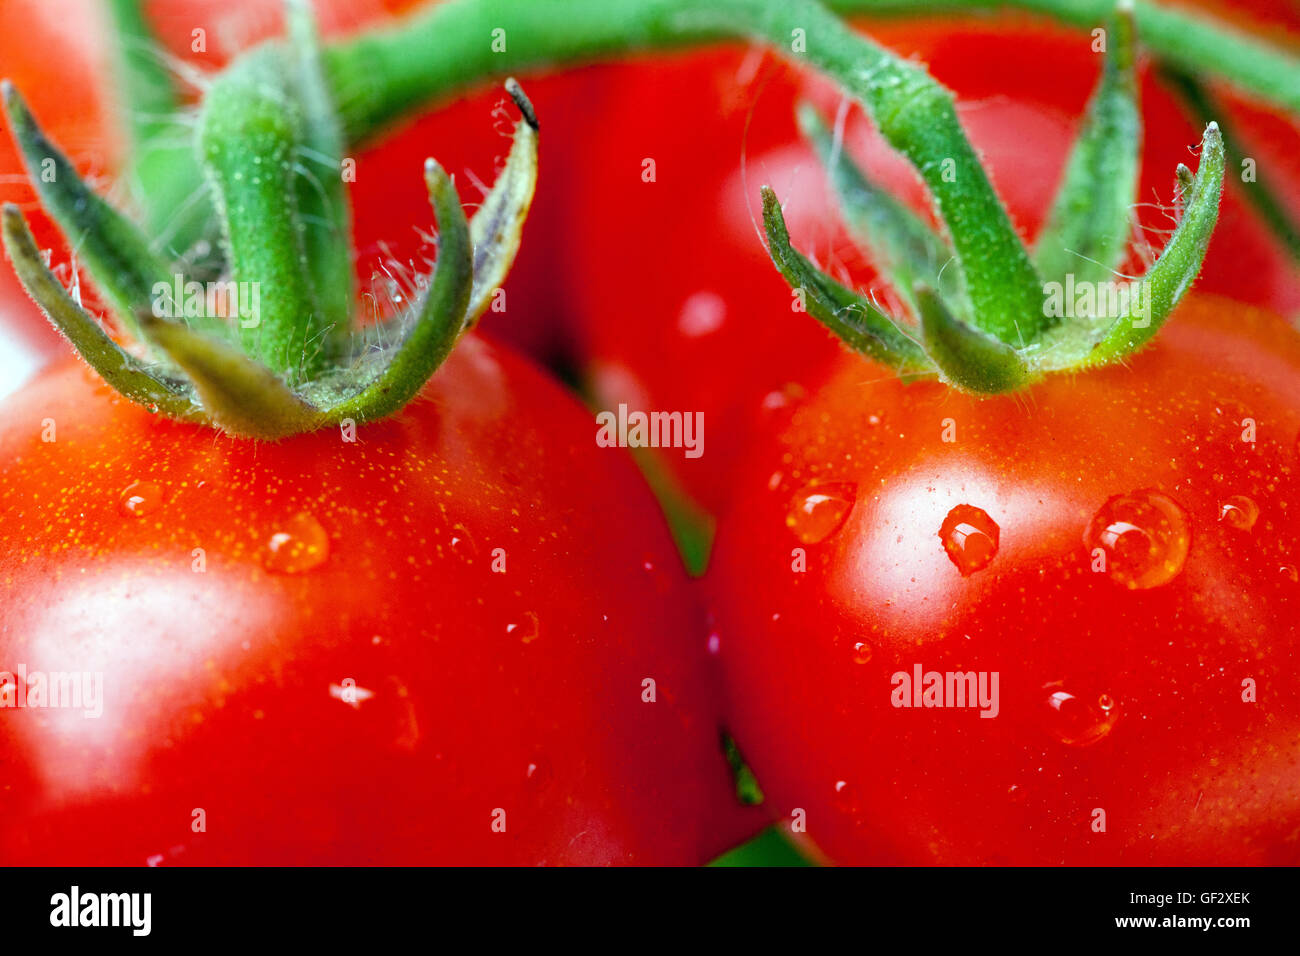 Tomates de vigne Solanum lycopersicum gros plan fruits juteux gros plan, tomates cerises naines Banque D'Images